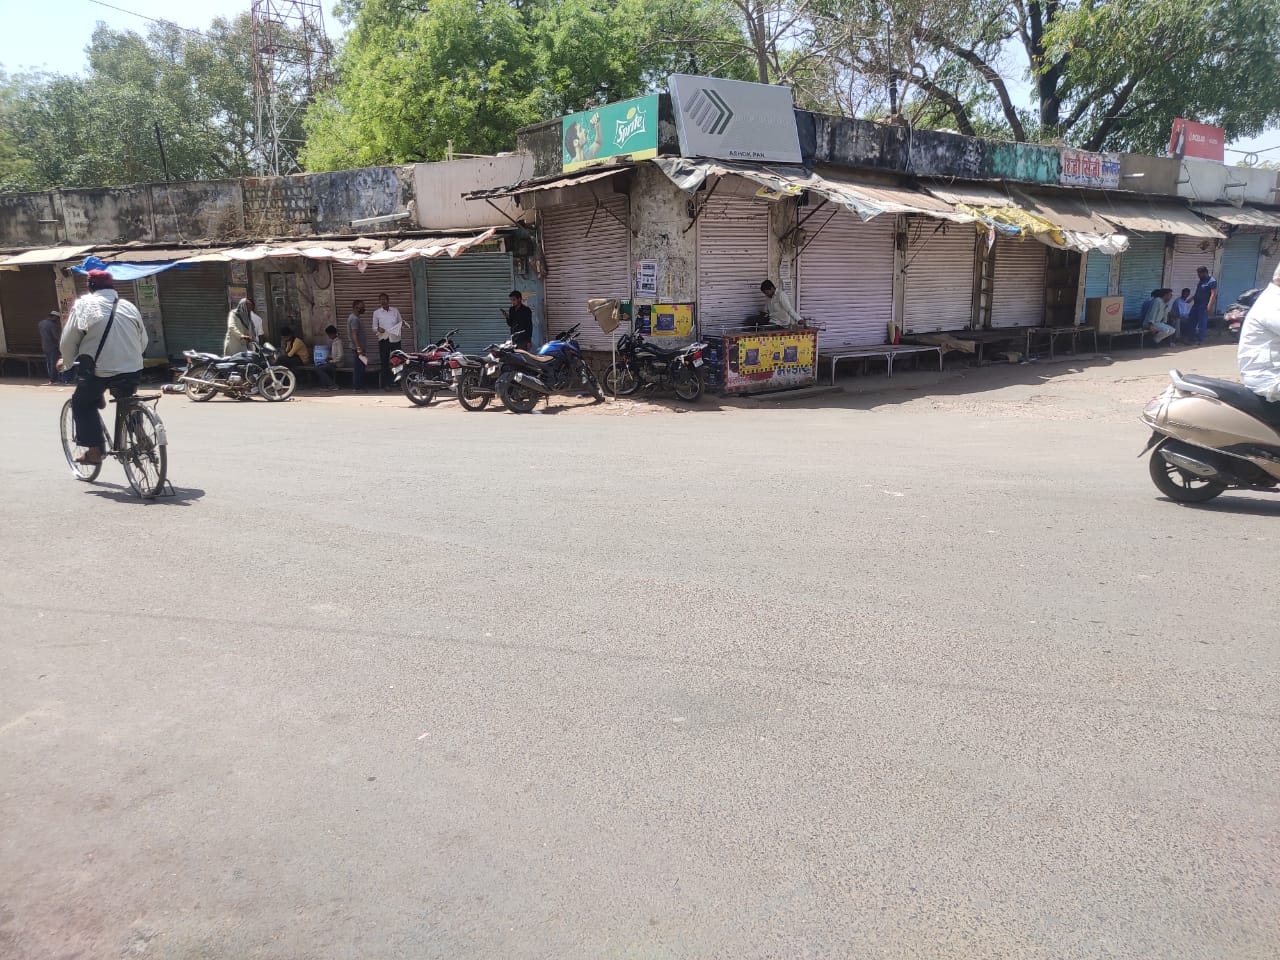 भारत बंद का असर-दिन भर बाजार में बंद रही दुकानें, सडक़ों पर सन्नाटा